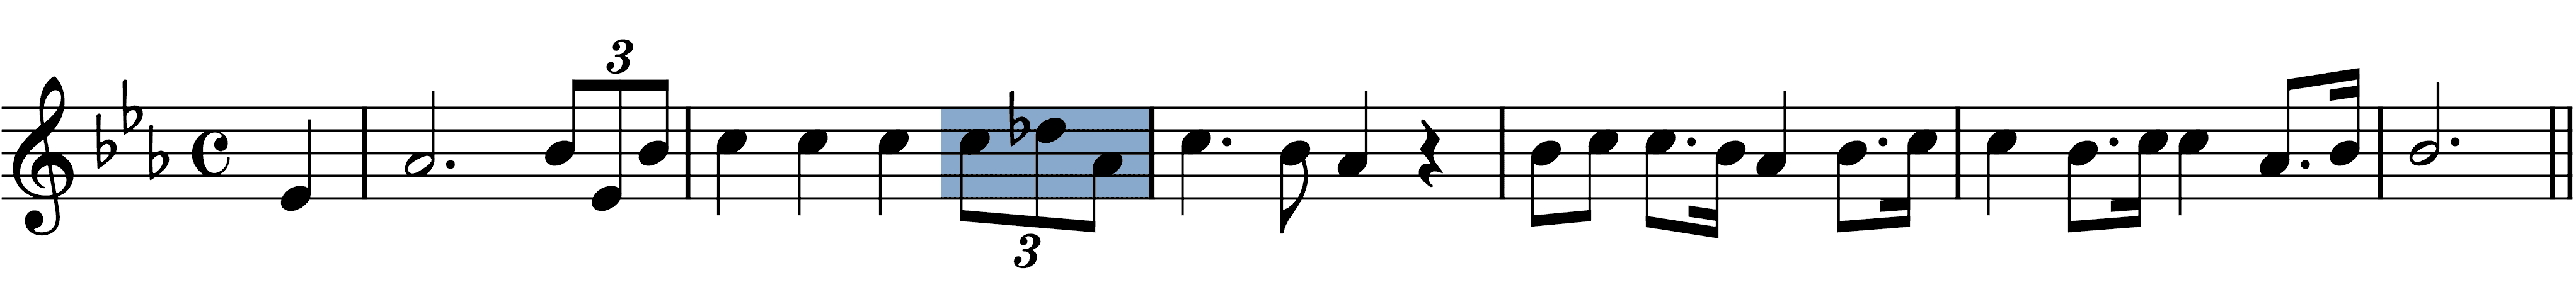 verdi-triumphal-march melodic figures